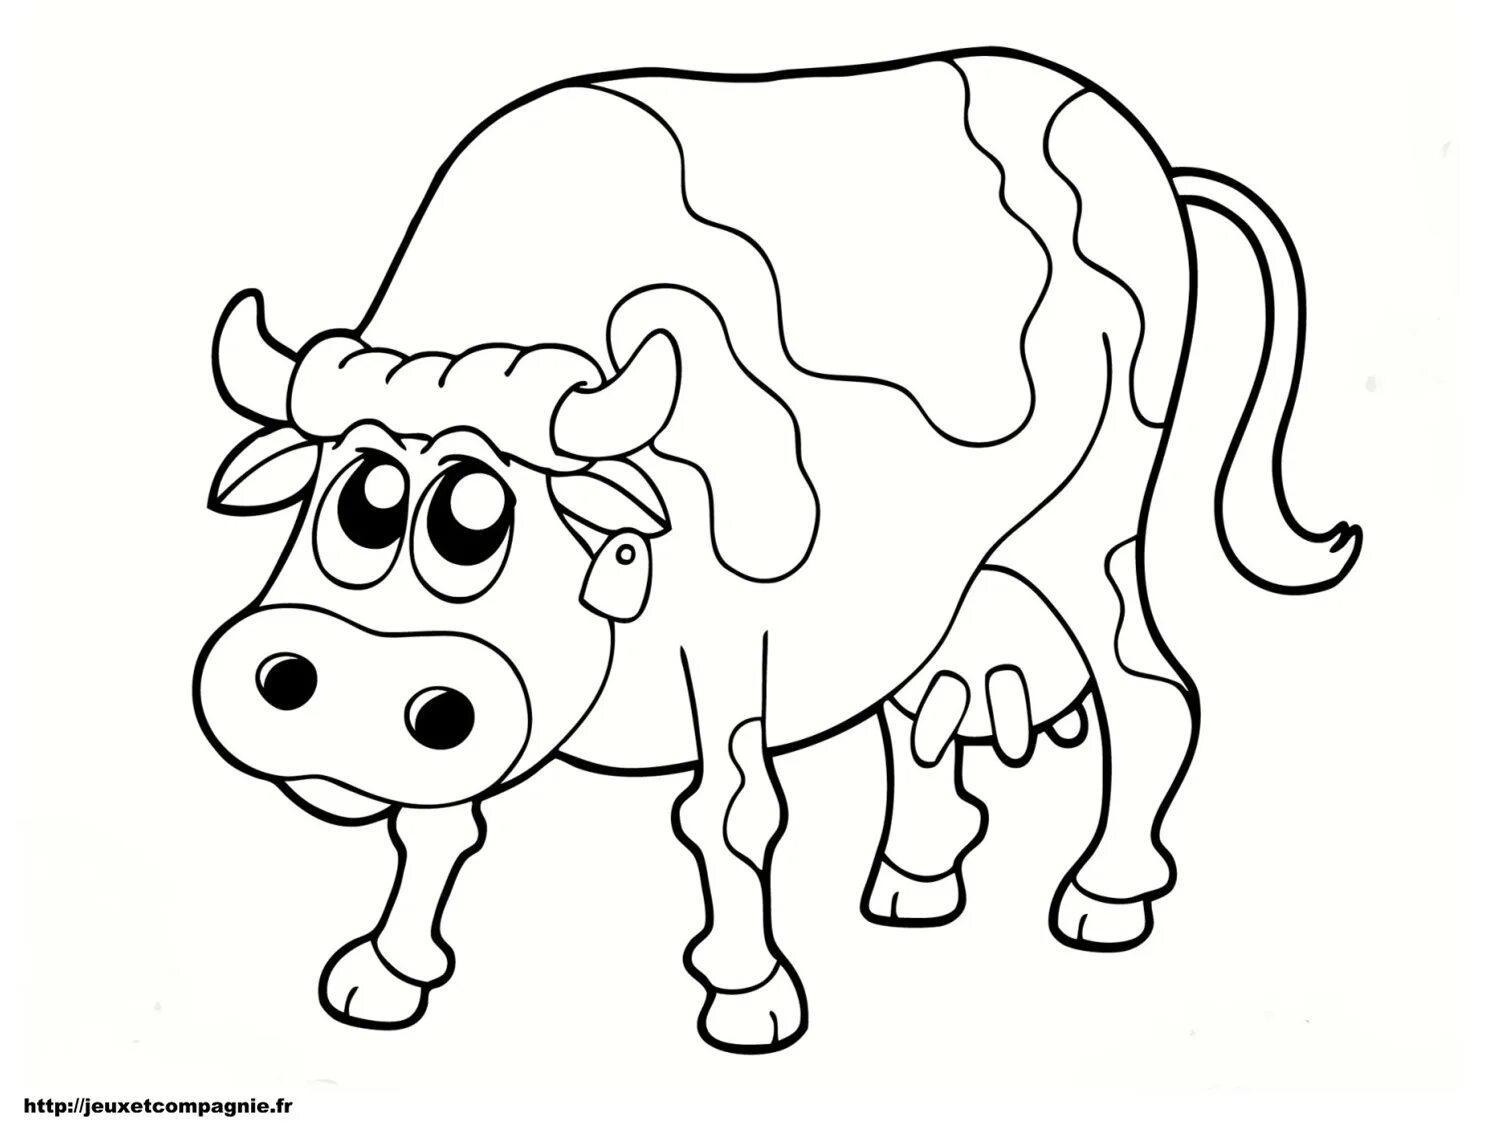 Раскраски для детей 3 года коровы. Раскраска корова. Корова раскраска для детей. Корова раскраска для малышей. Теленок раскраска для детей.